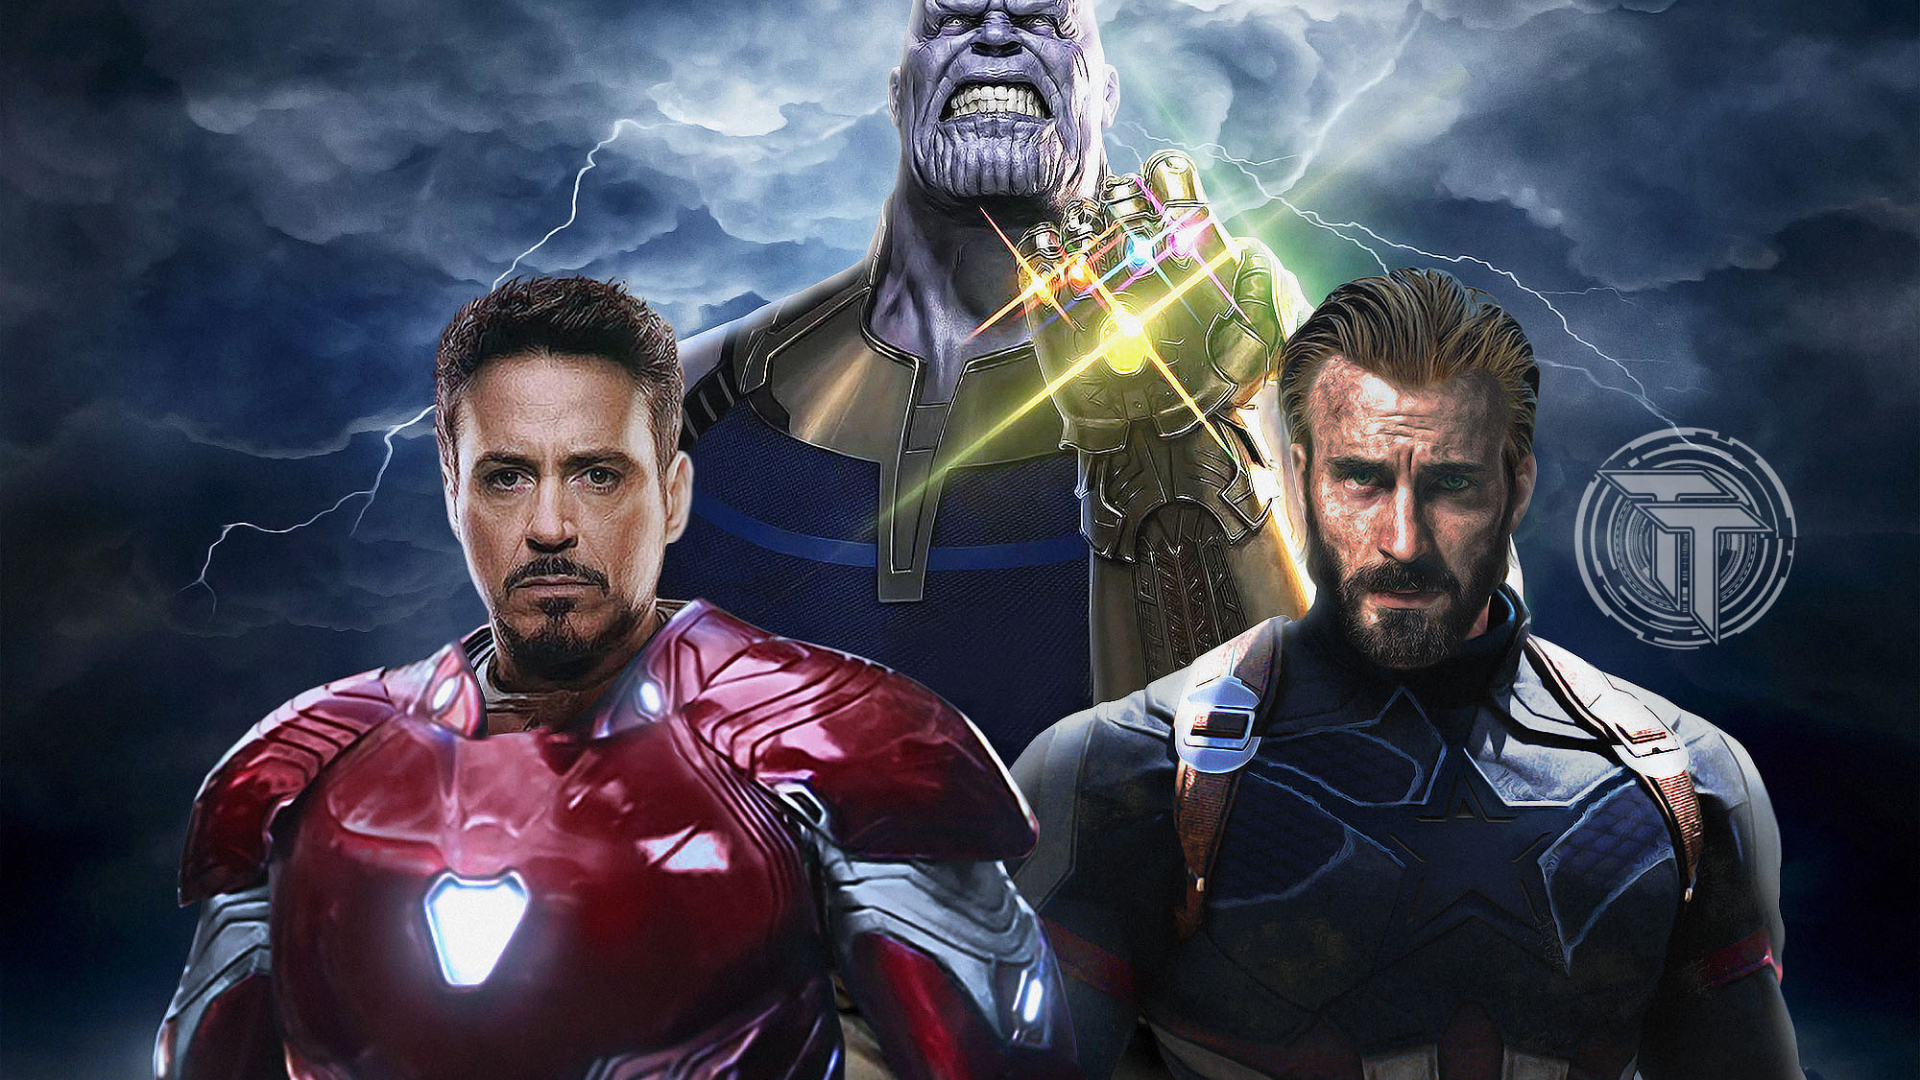 Download 1920x1080 Wallpaper Avengers Infinity War Captain